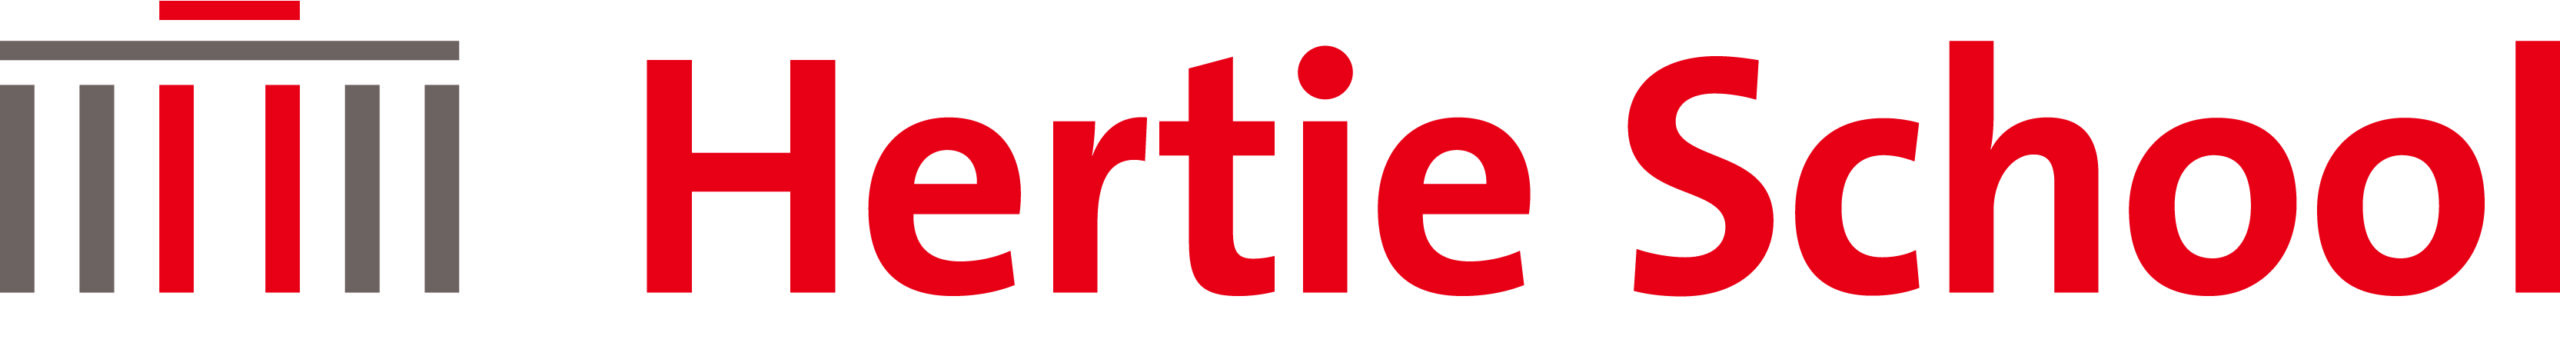 Hertie School – Berlin’s University of Governance logo